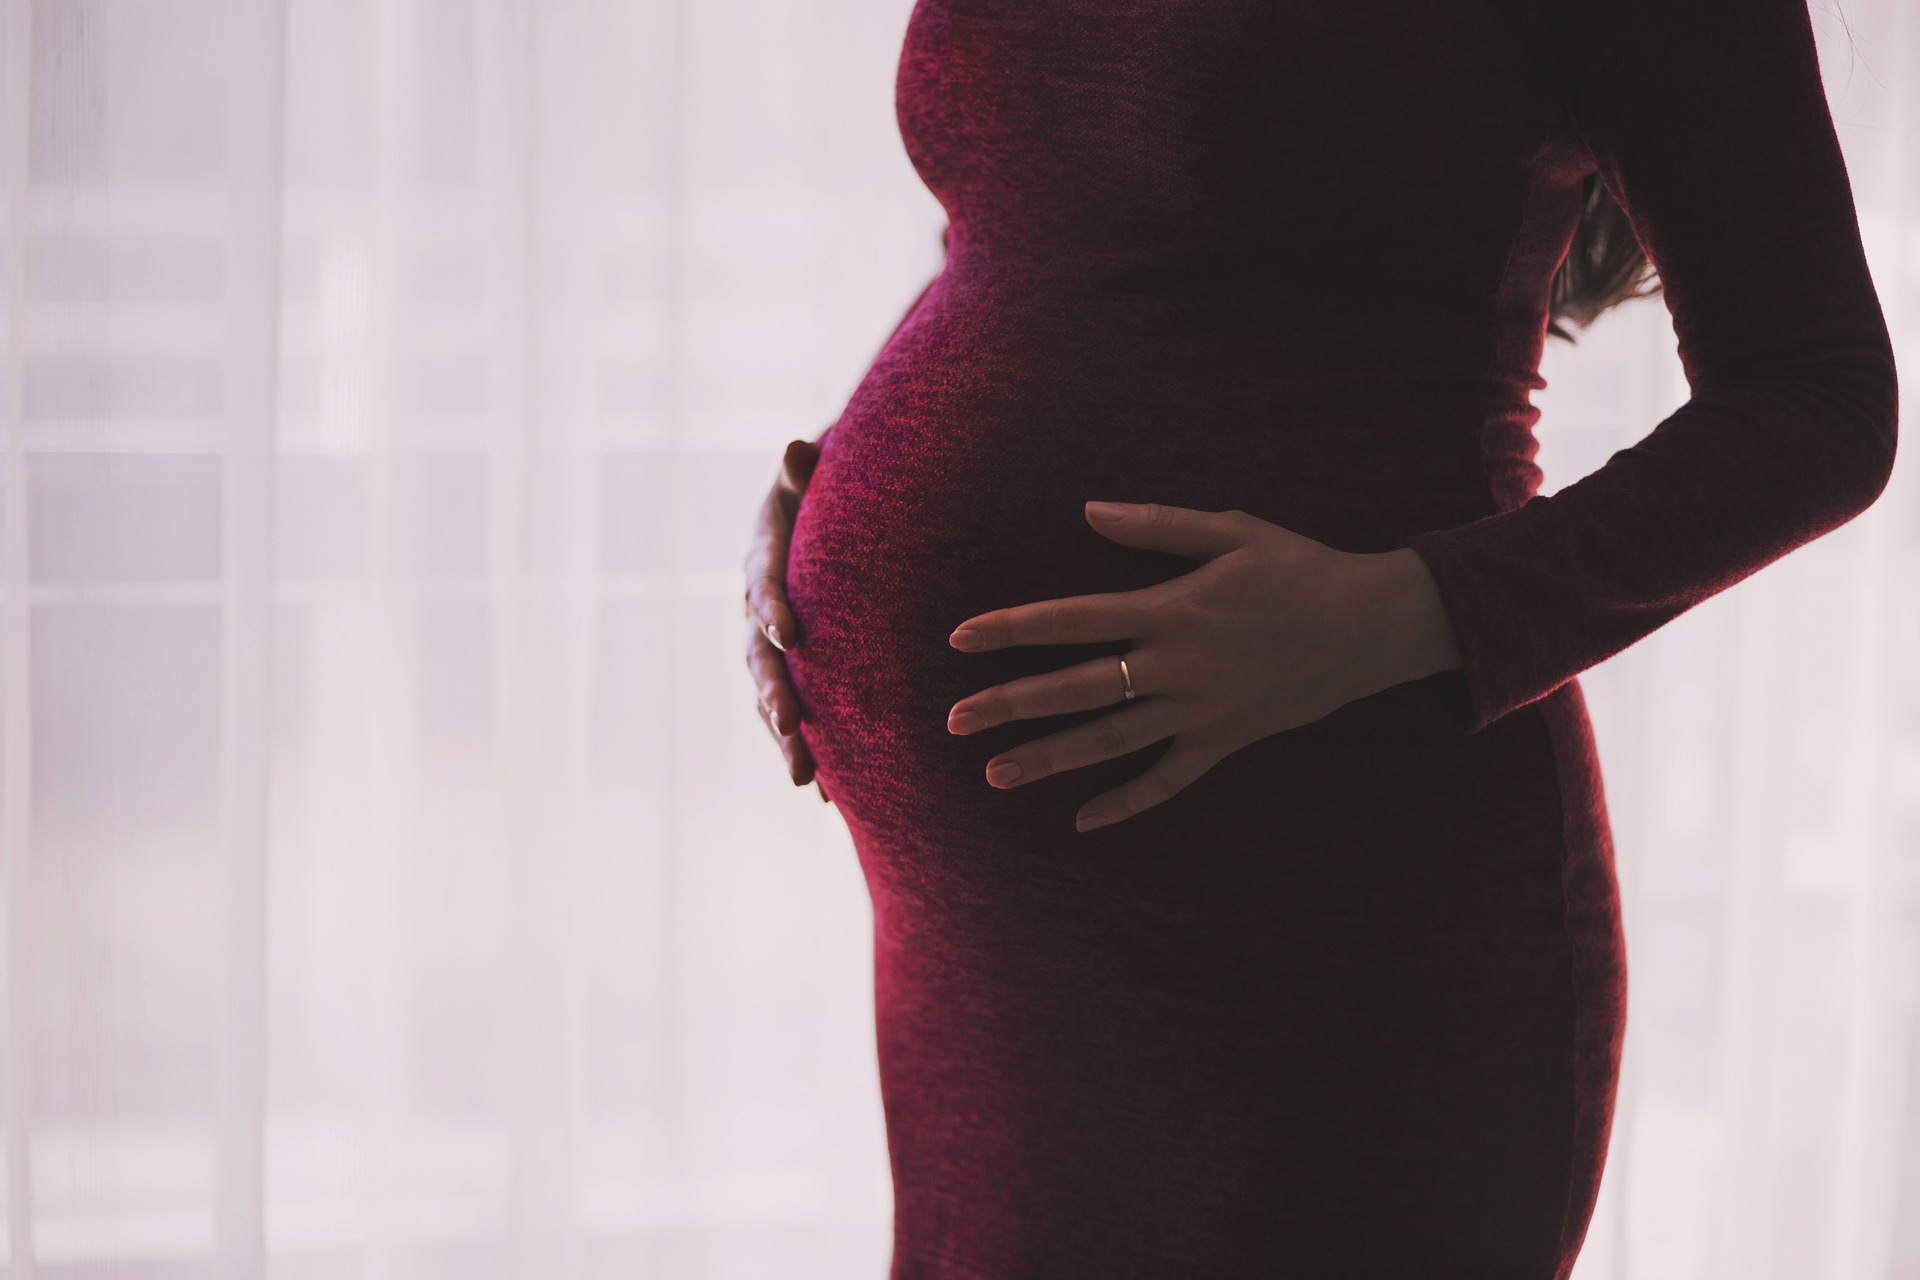 Grzeczność wobec kobiet w ciąży i świeżo upieczonych mam